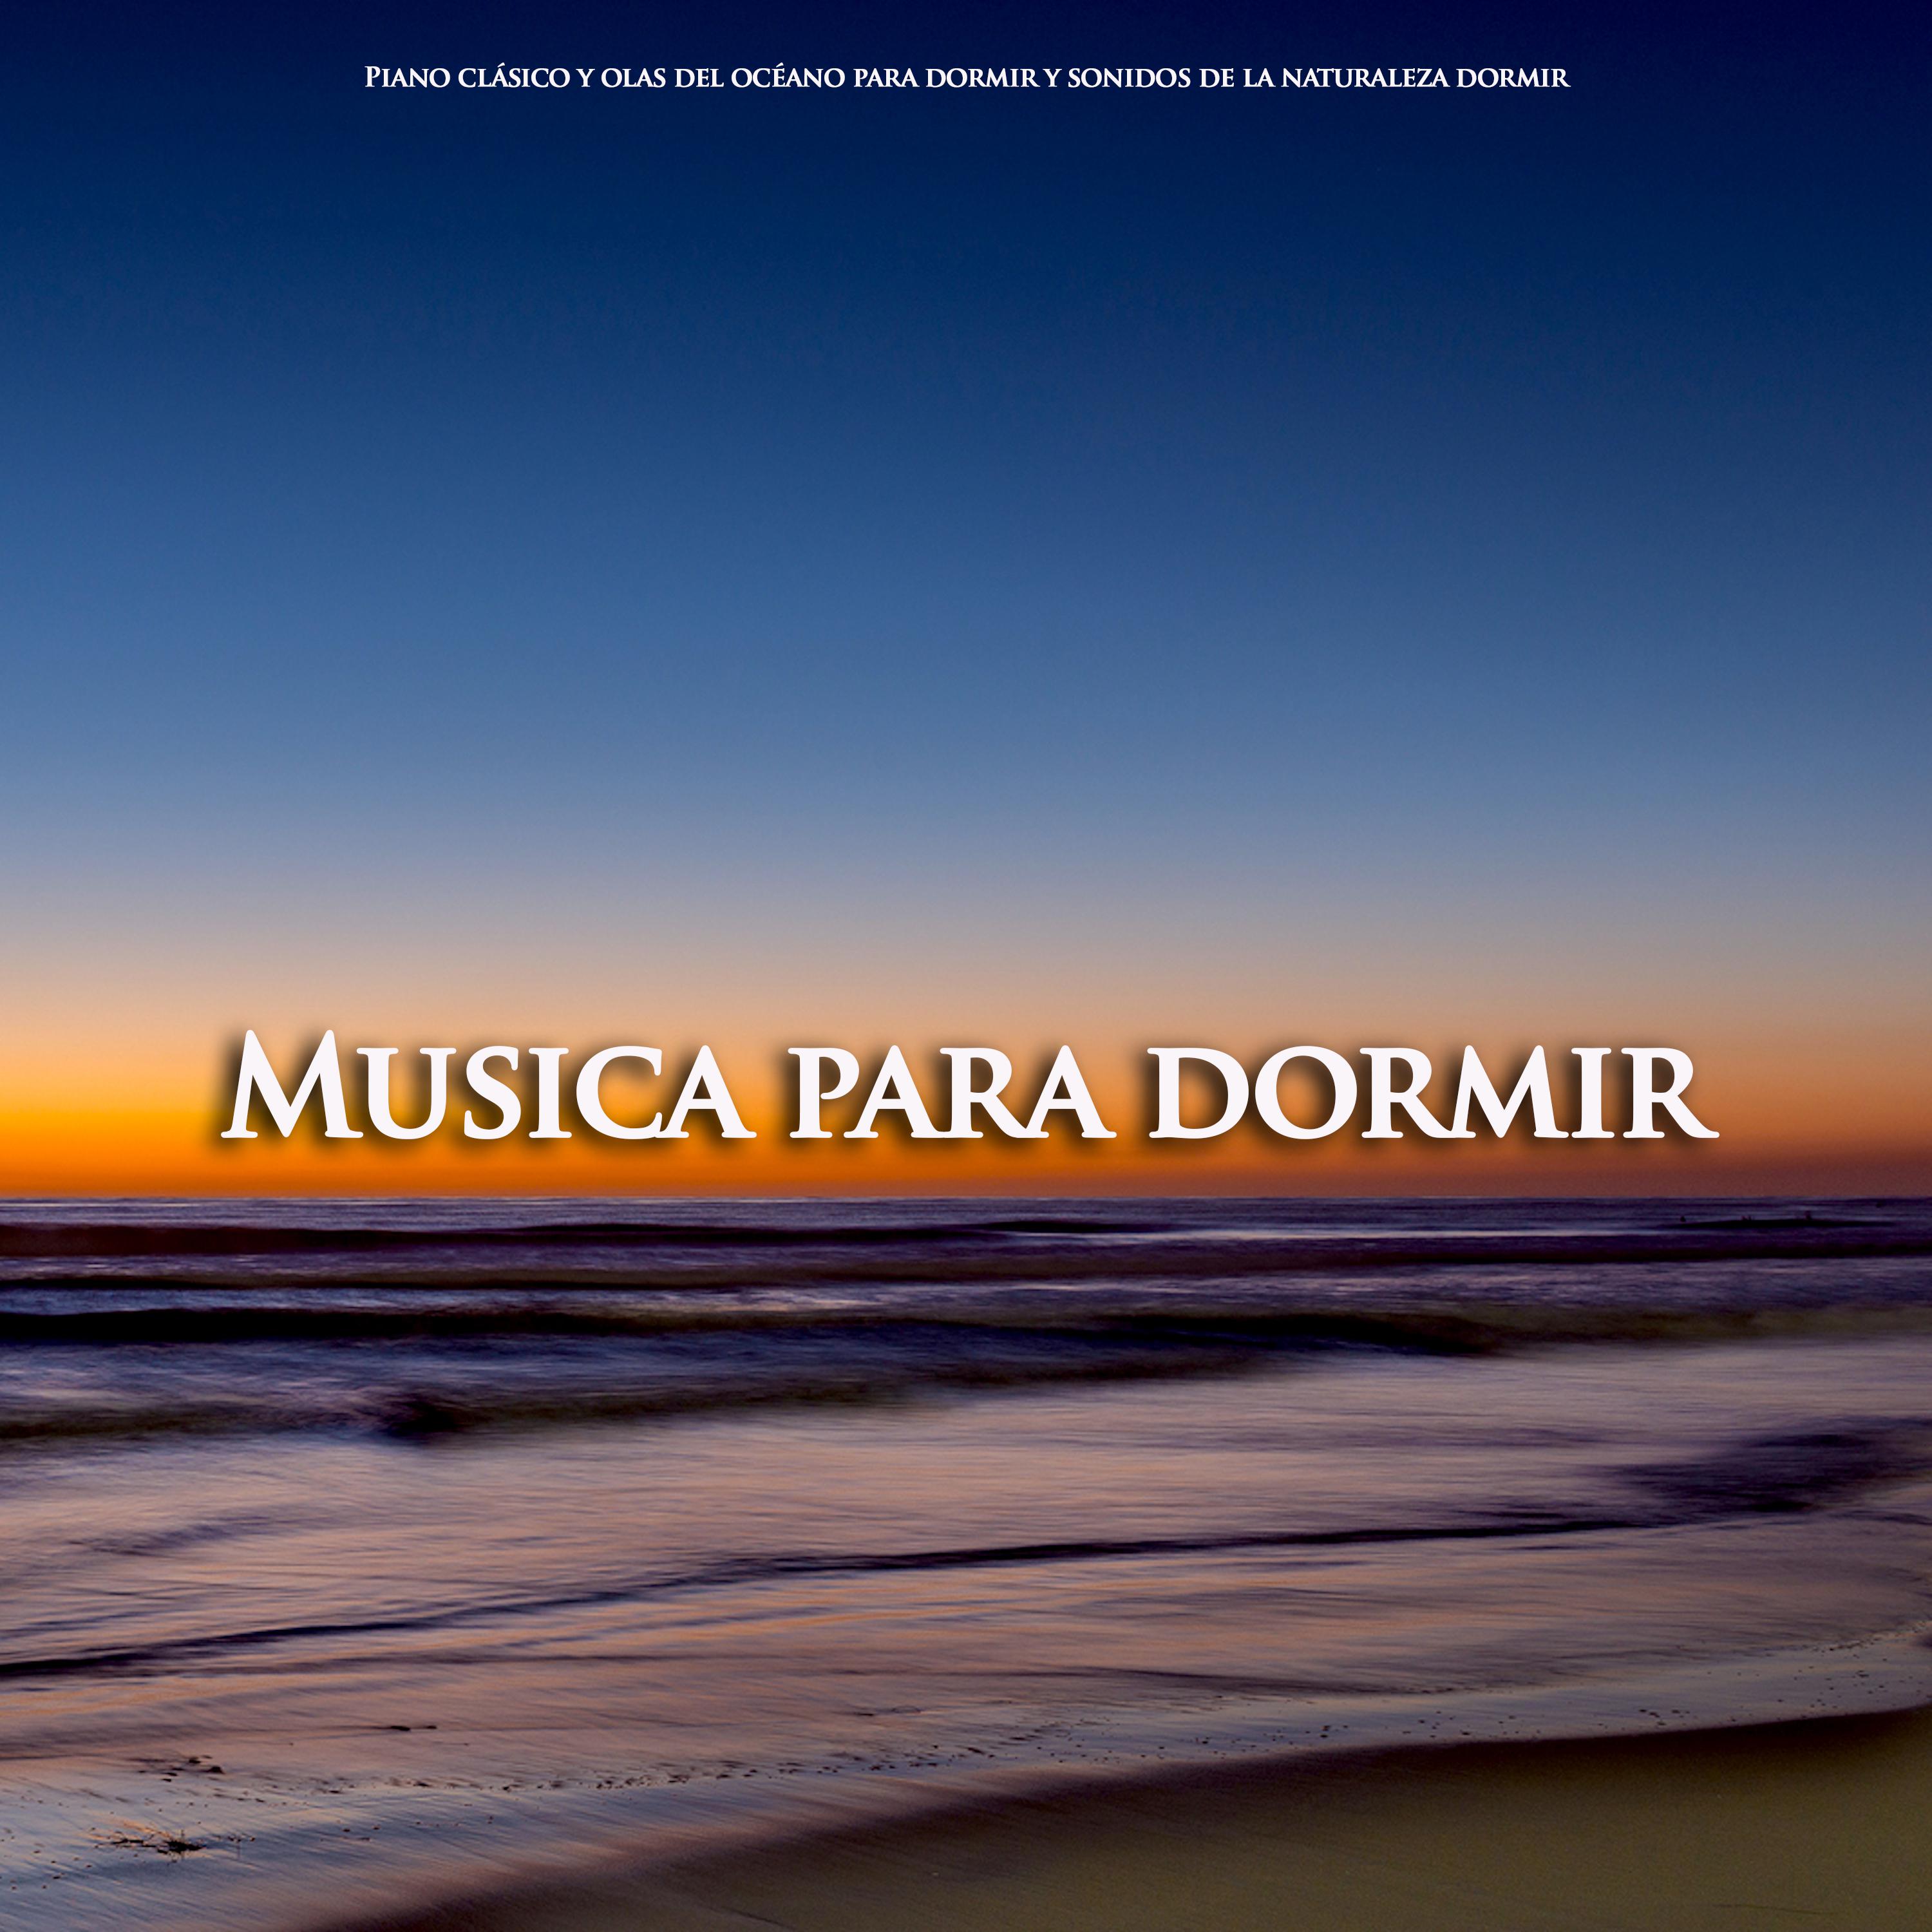 Prelude and Nocturne - Scriabin - Musica para dormir - Olas del océano para dormir - Piano clasico